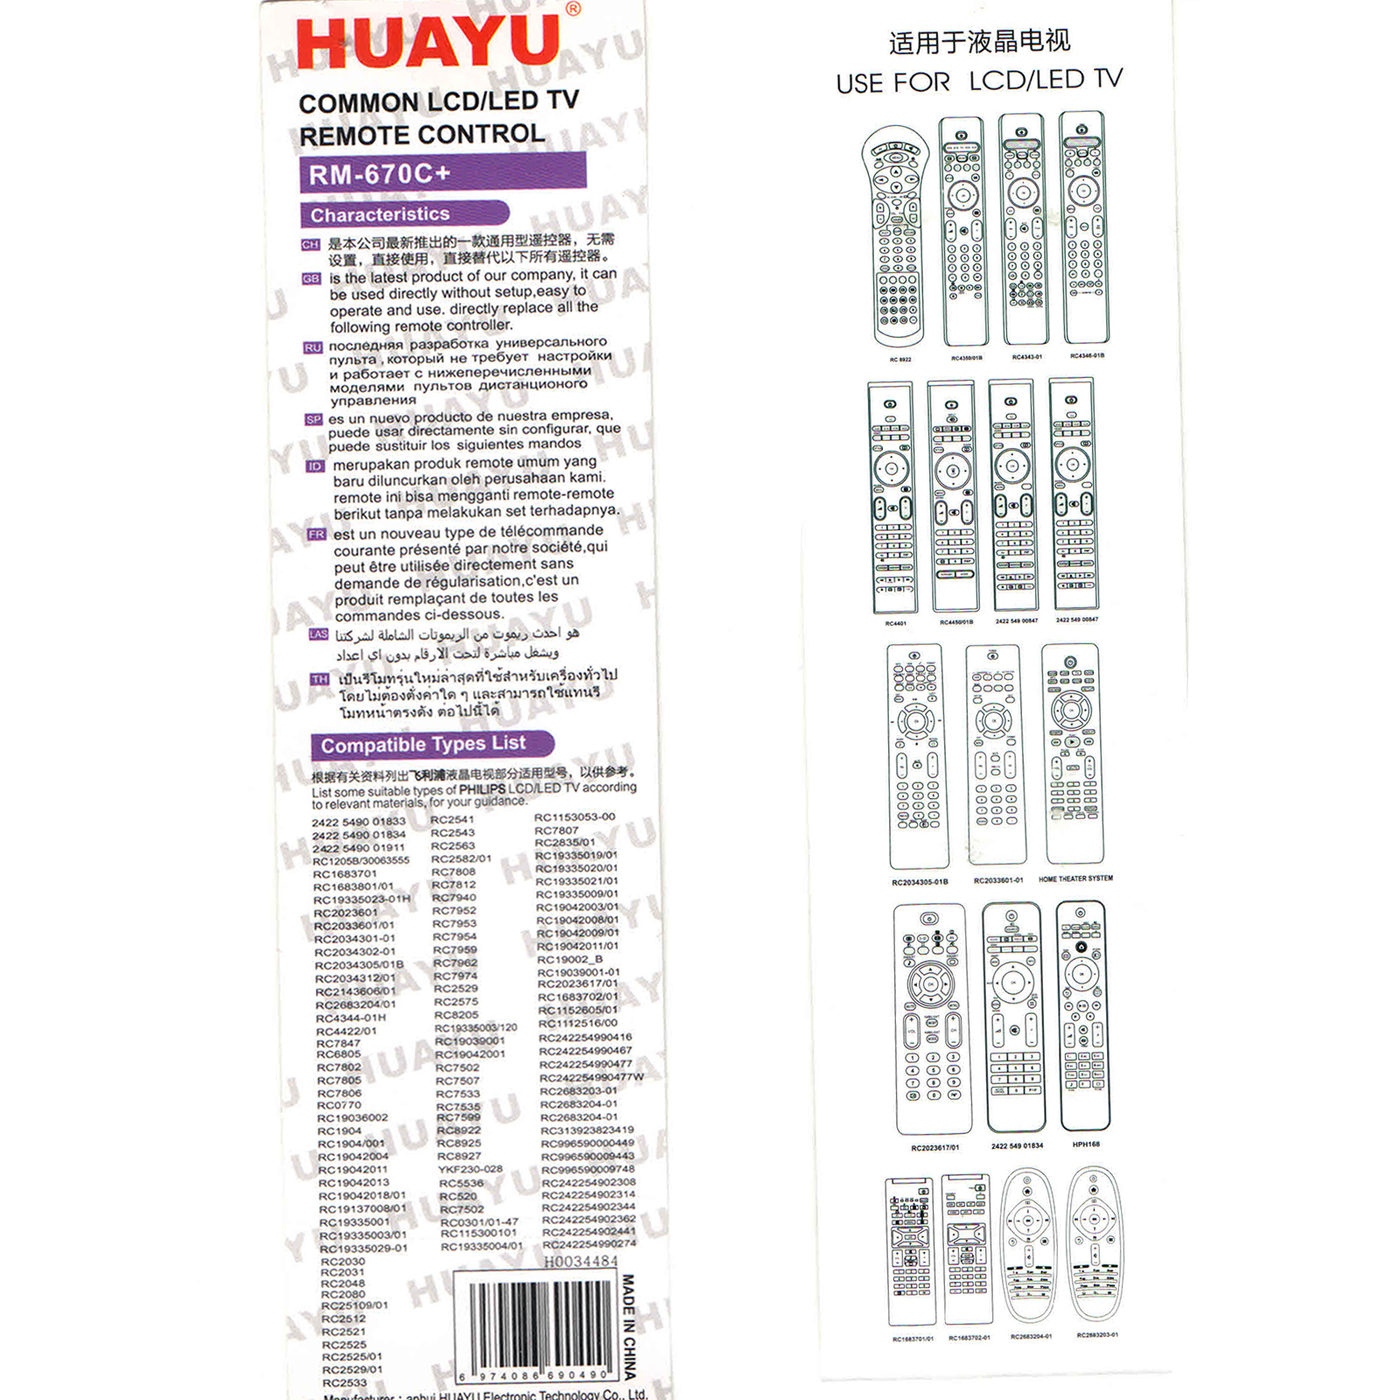 Телевизора huayu инструкция. Пульт универсальный Huayu для телевизора Philips. ПДУ для ТВ Philips Huayu RM-l1220. Пульт Huayu 670. Универсальный пульт Huayu для Philips TV.